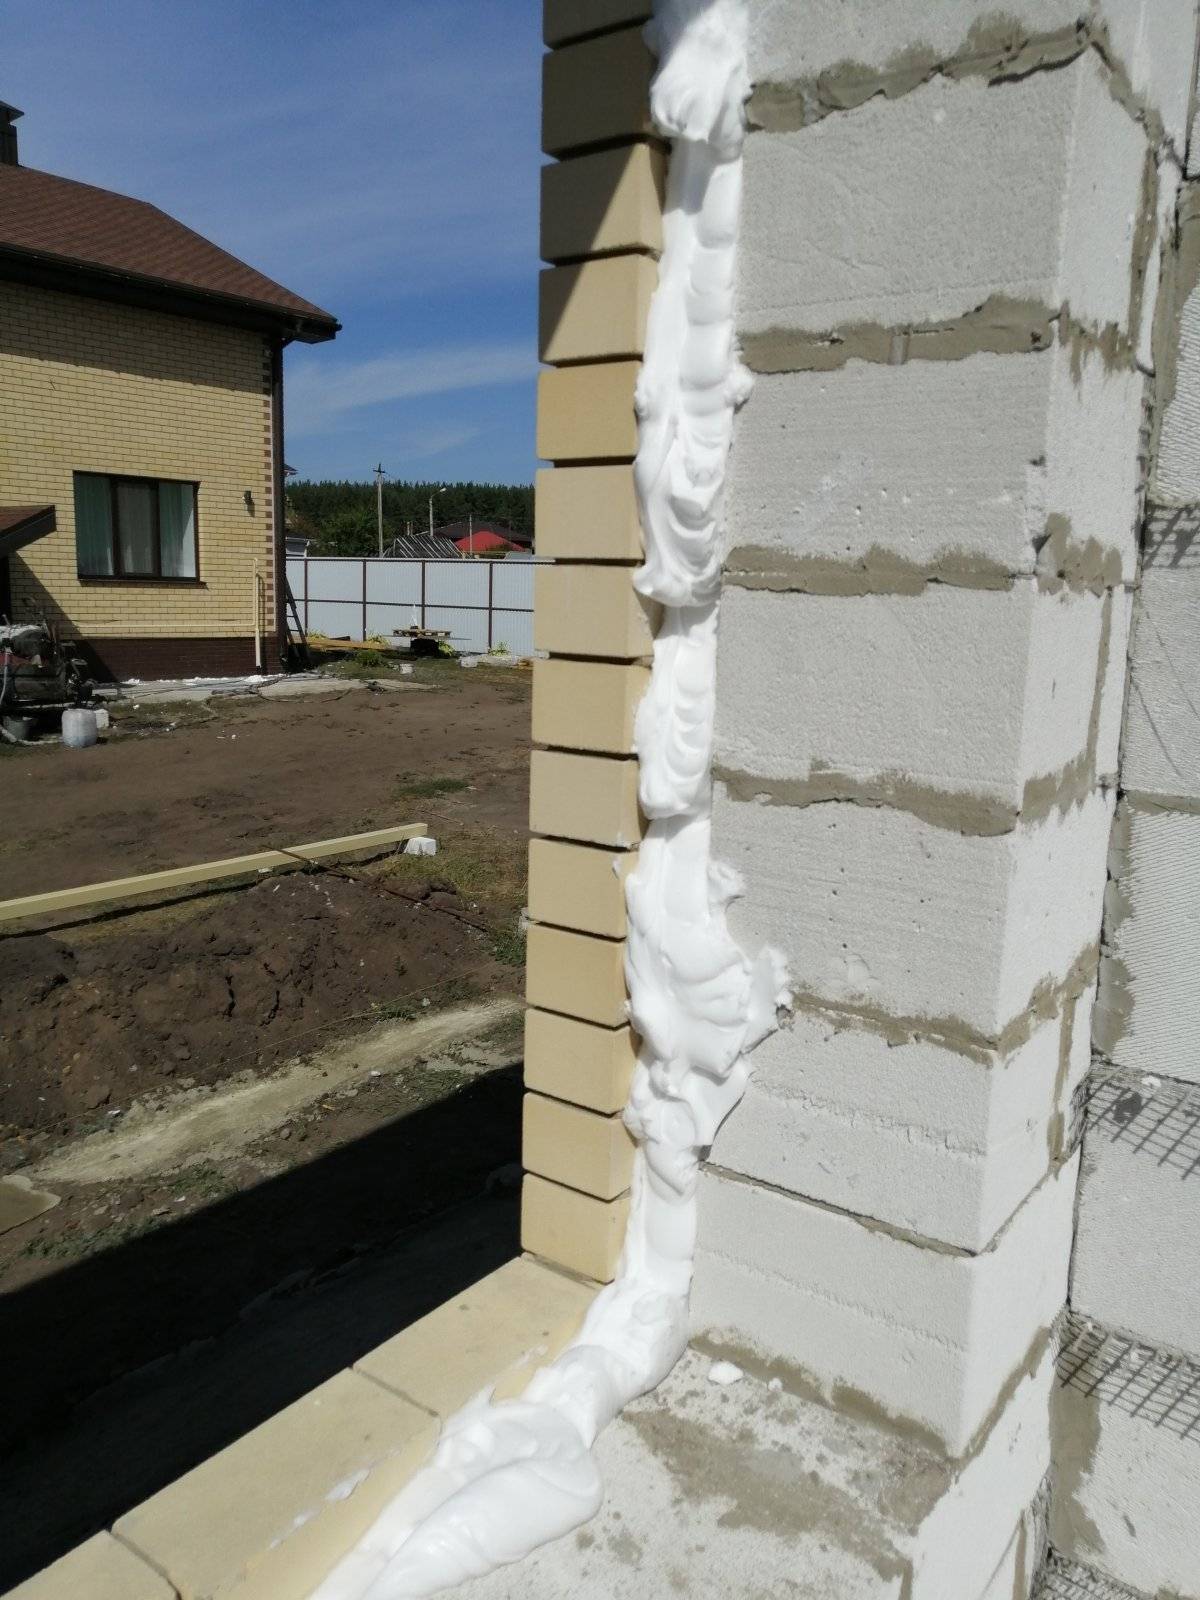 Утепление пеноизолом: внутренний и внешний монтаж, подготовка стен и крыш домов к запениванию